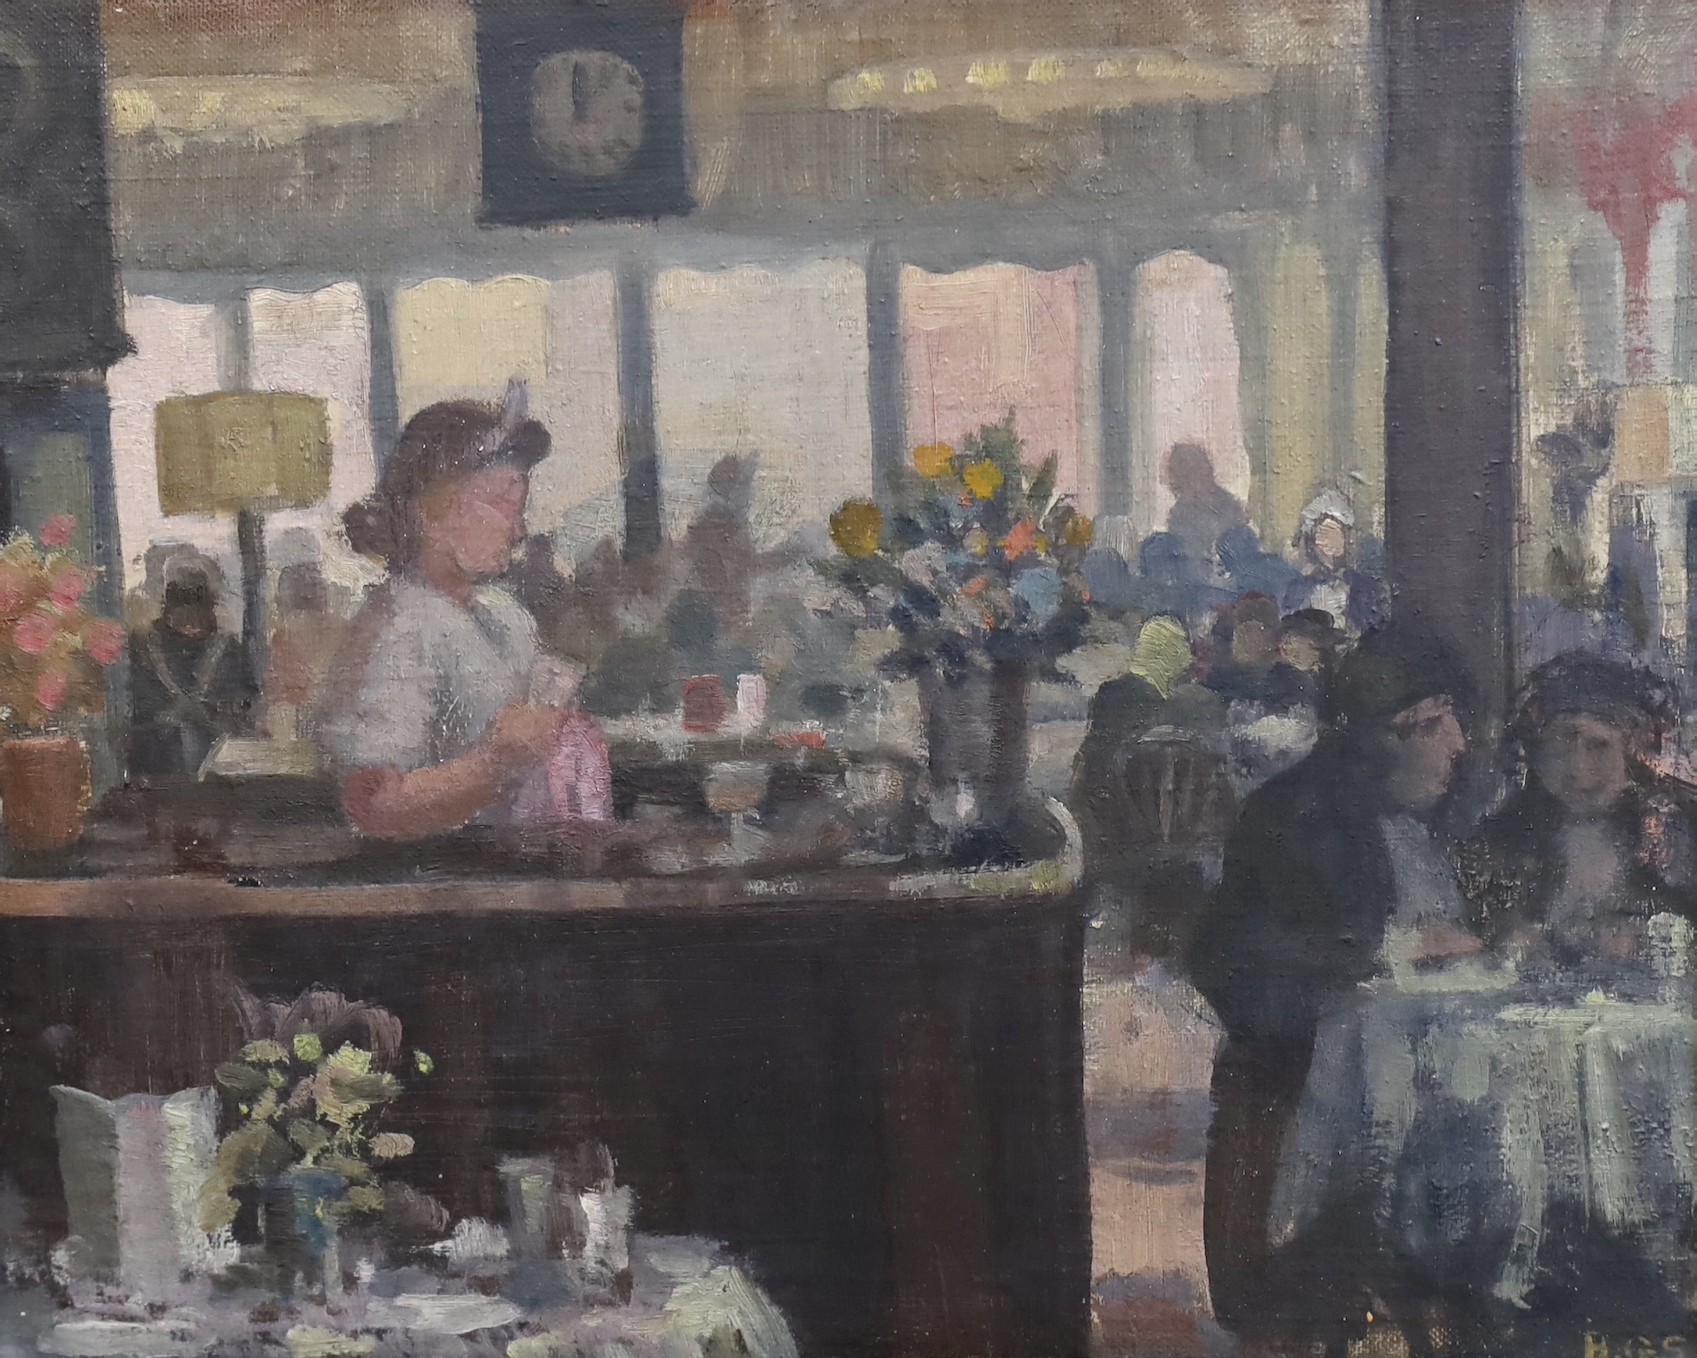 B.G. Staniland, 'A café in Newcastle', oil on board, 30 x 36cm